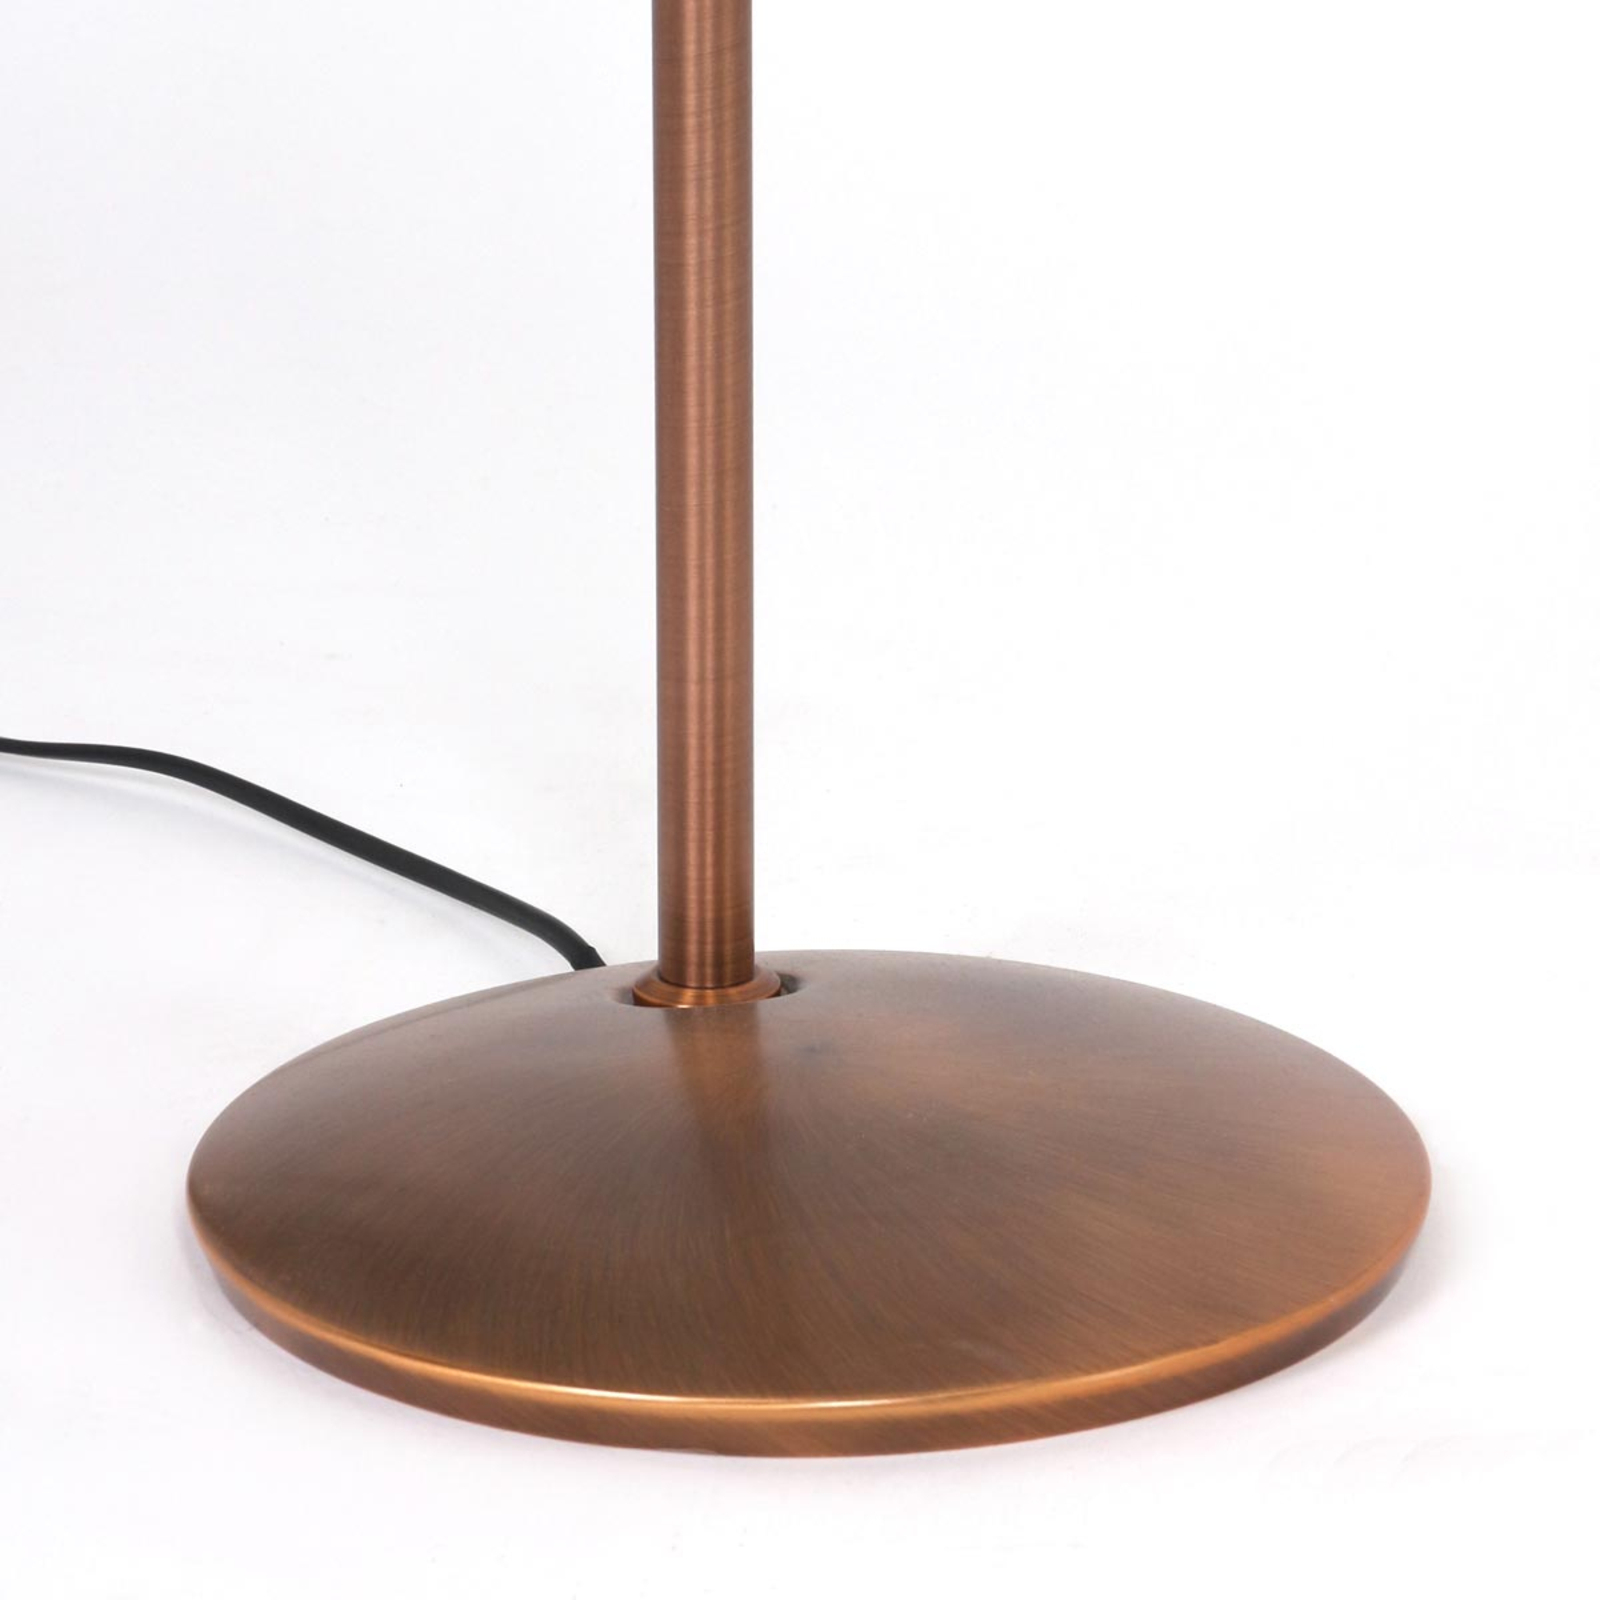 Lampă podea LED Zenith bronz, dimabilă, reglabilă